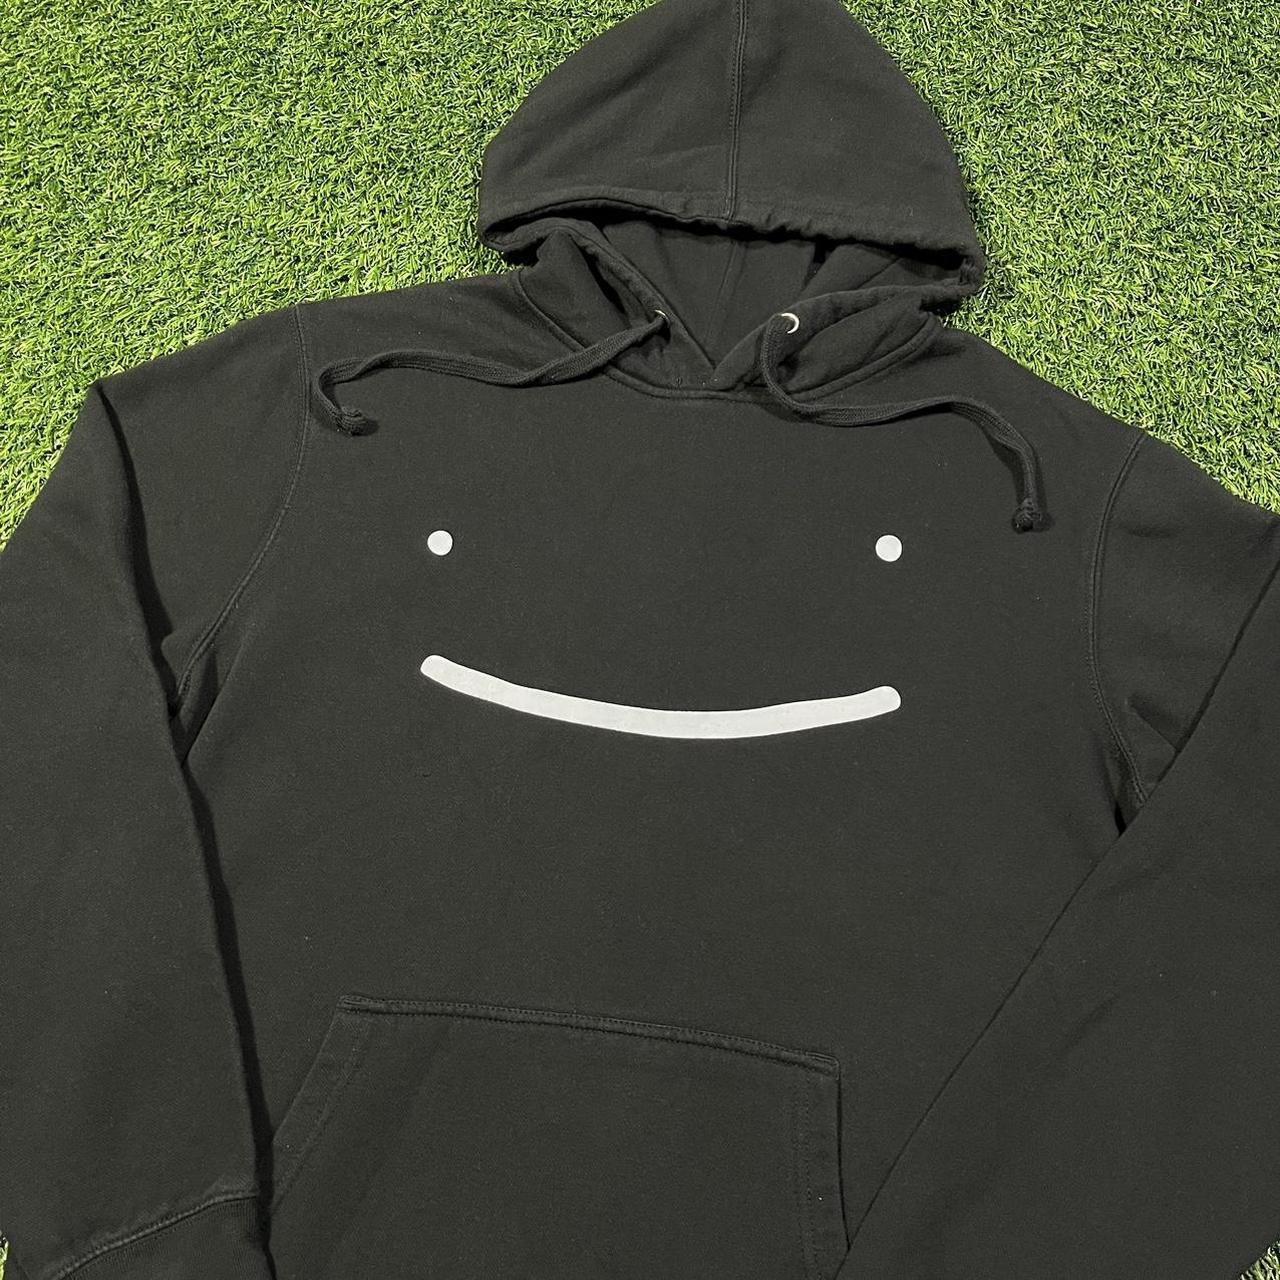 Dream Smiley Face Black Pullover Hoodie Jacket Adult... - Depop